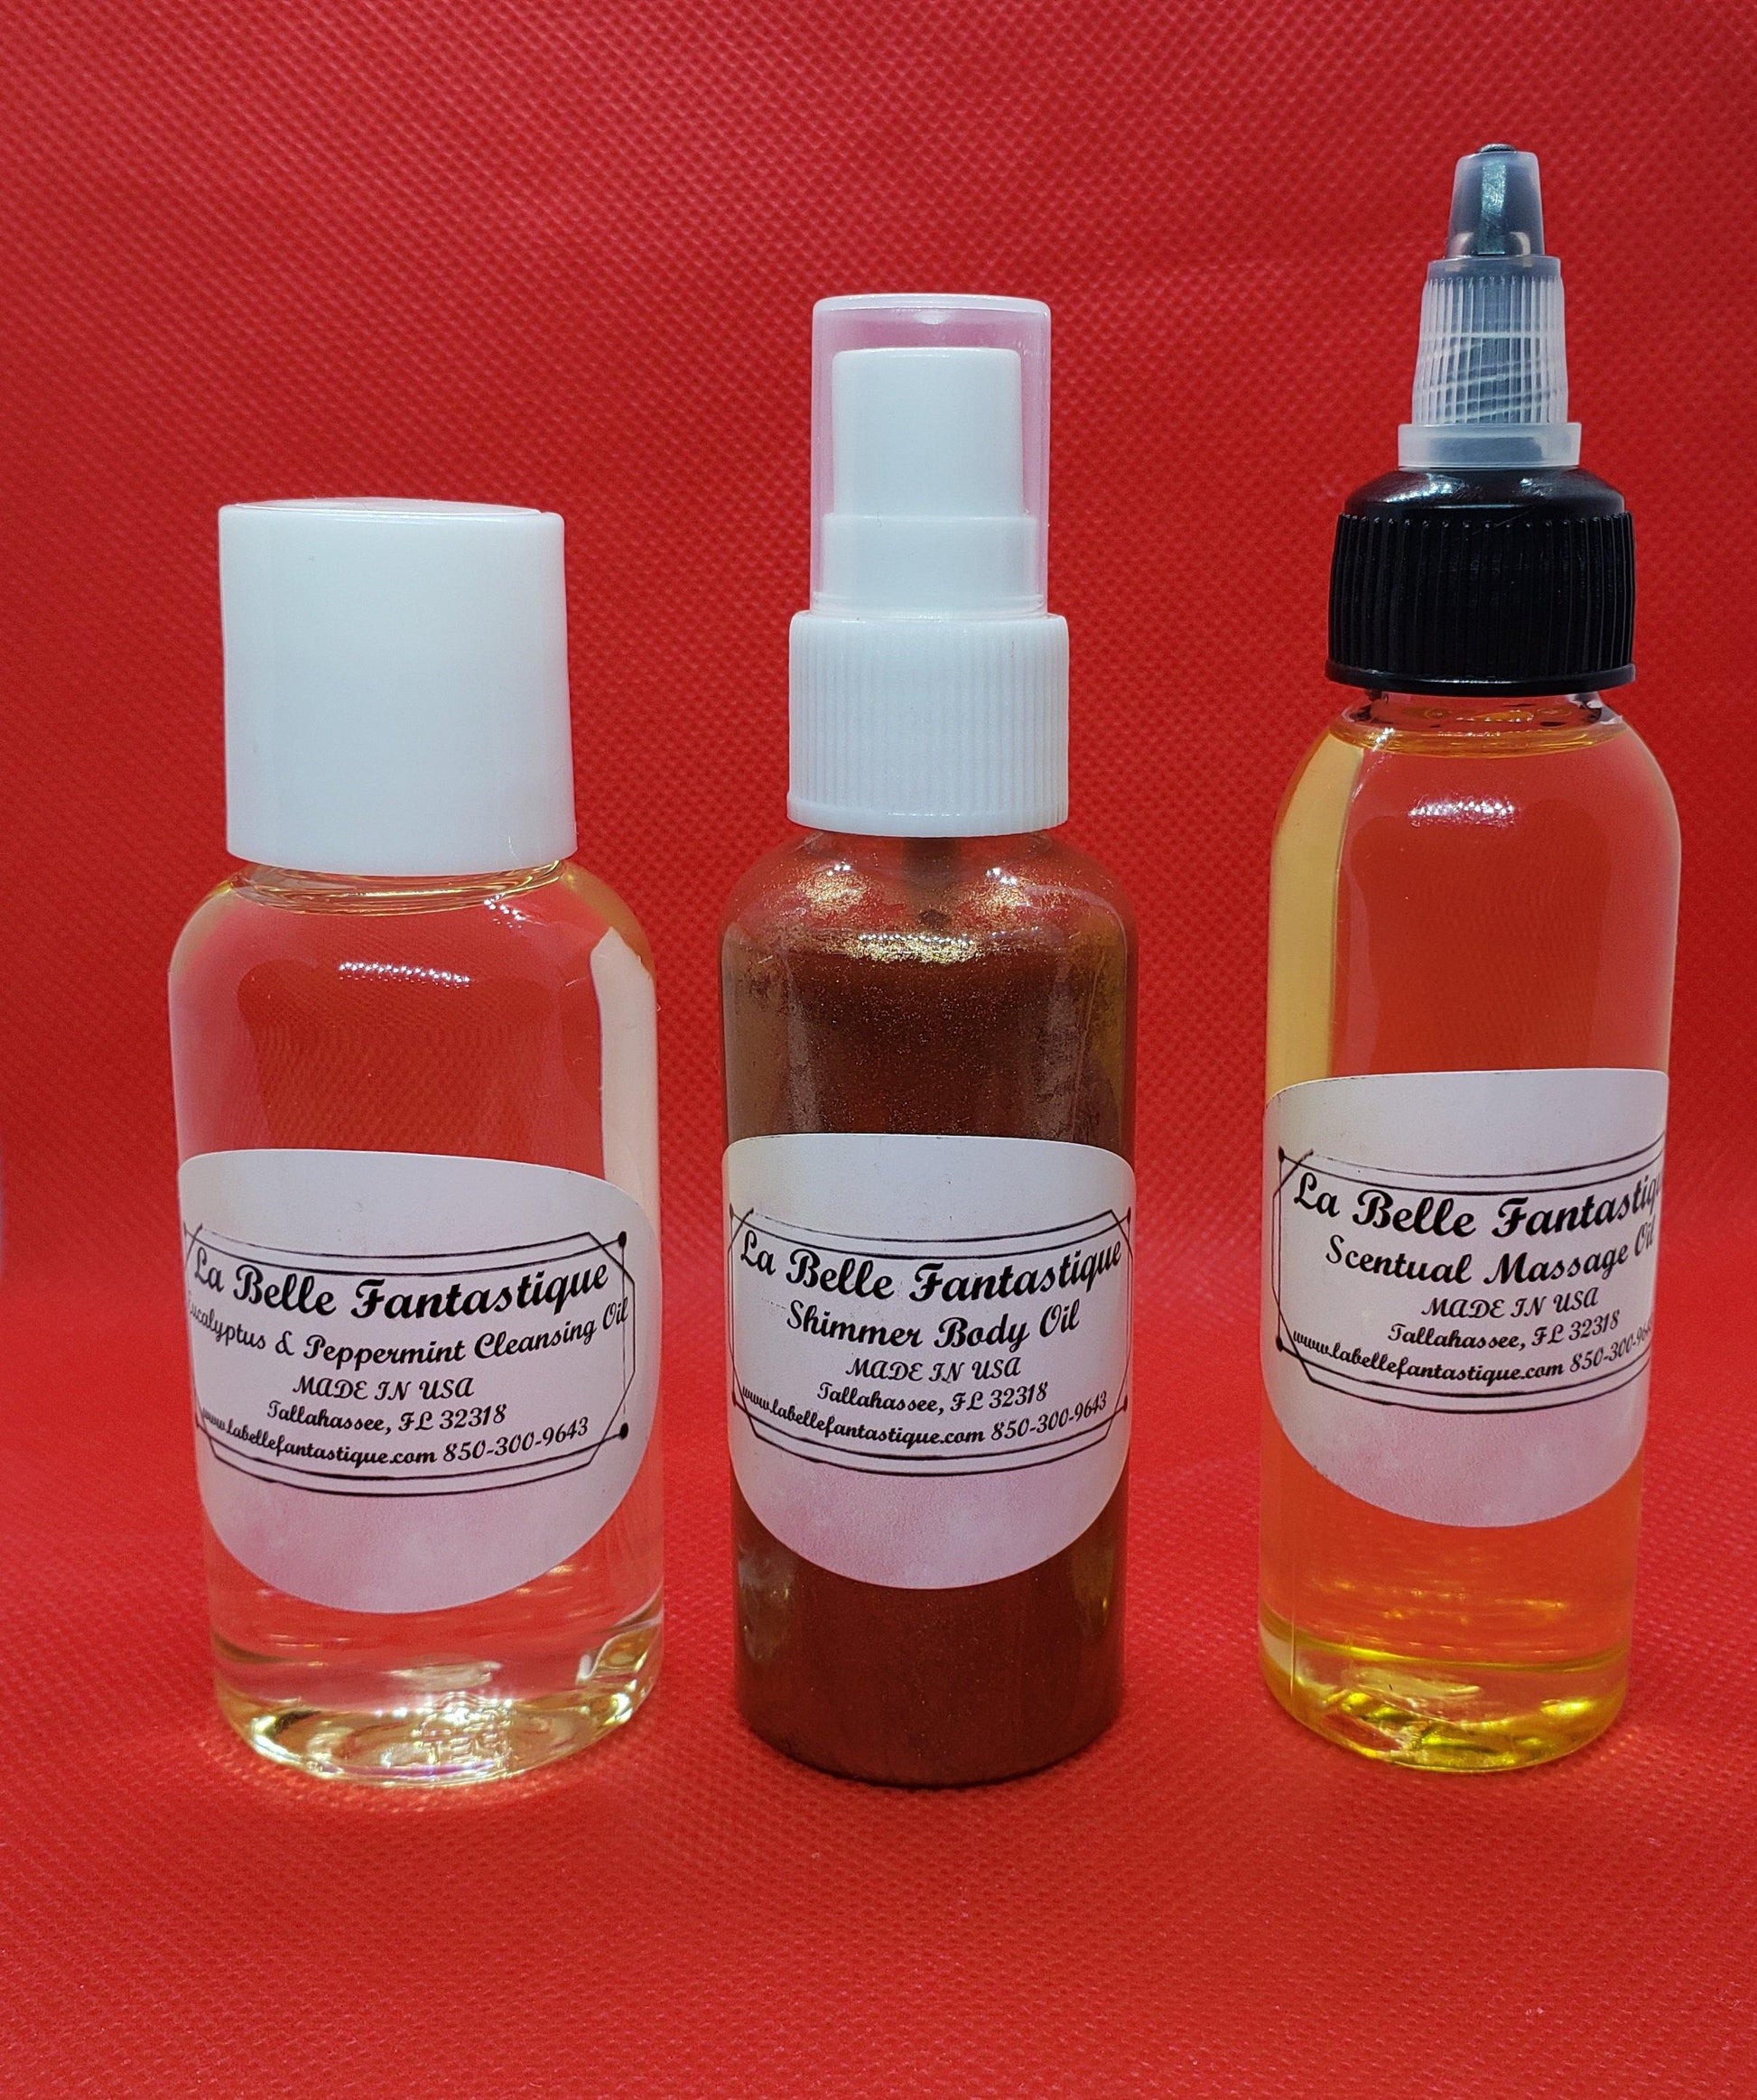 La Belle Fantastique Shimmer Body Oil | Illuminating Body Oil | Scented Body Oil | Scented Shimmer Body Oil | Body Shimmer Oil Moisturizer - La Belle Fantastique 